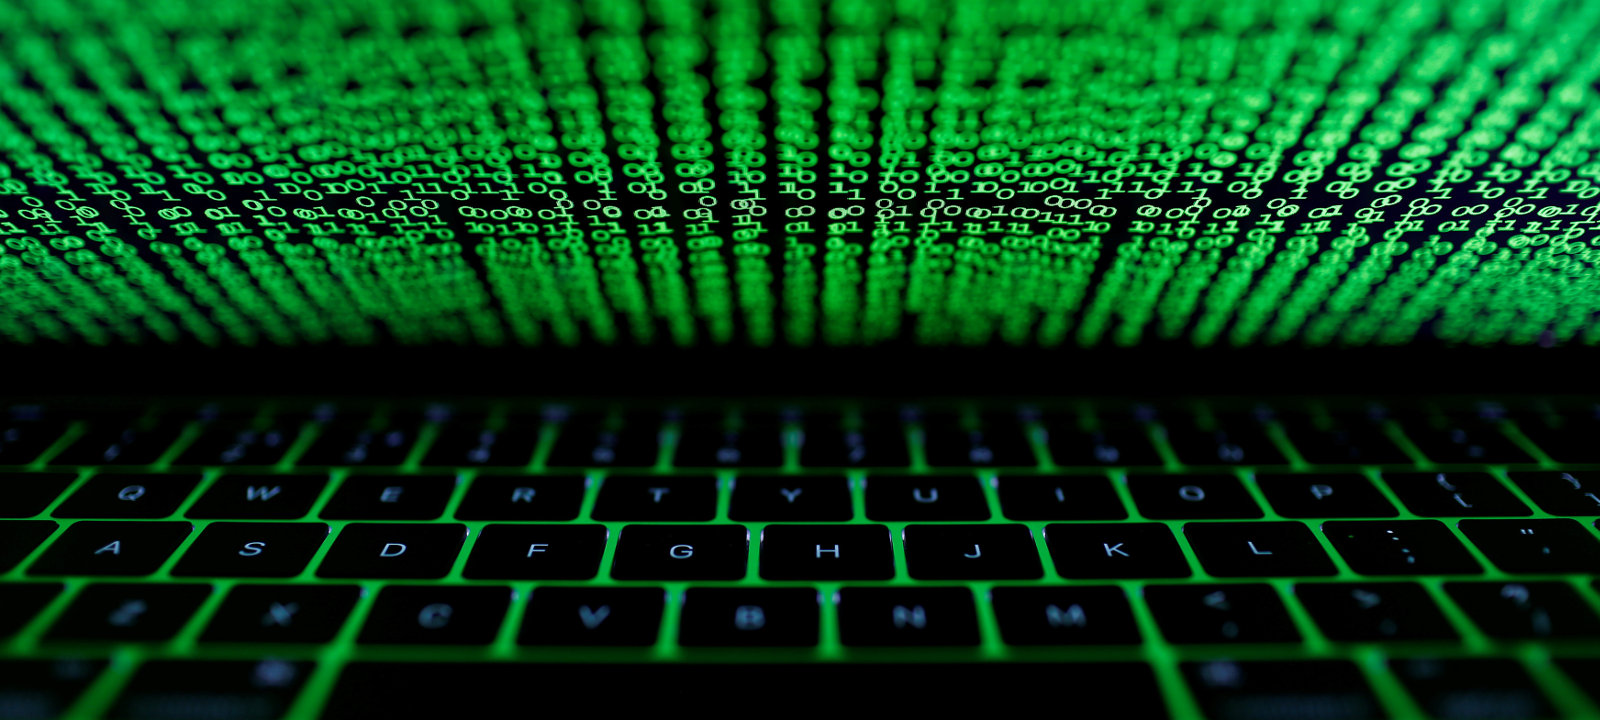 18-річний хакер із Великоберезнянщини розповсюджував шкідливе програмне забезпечення